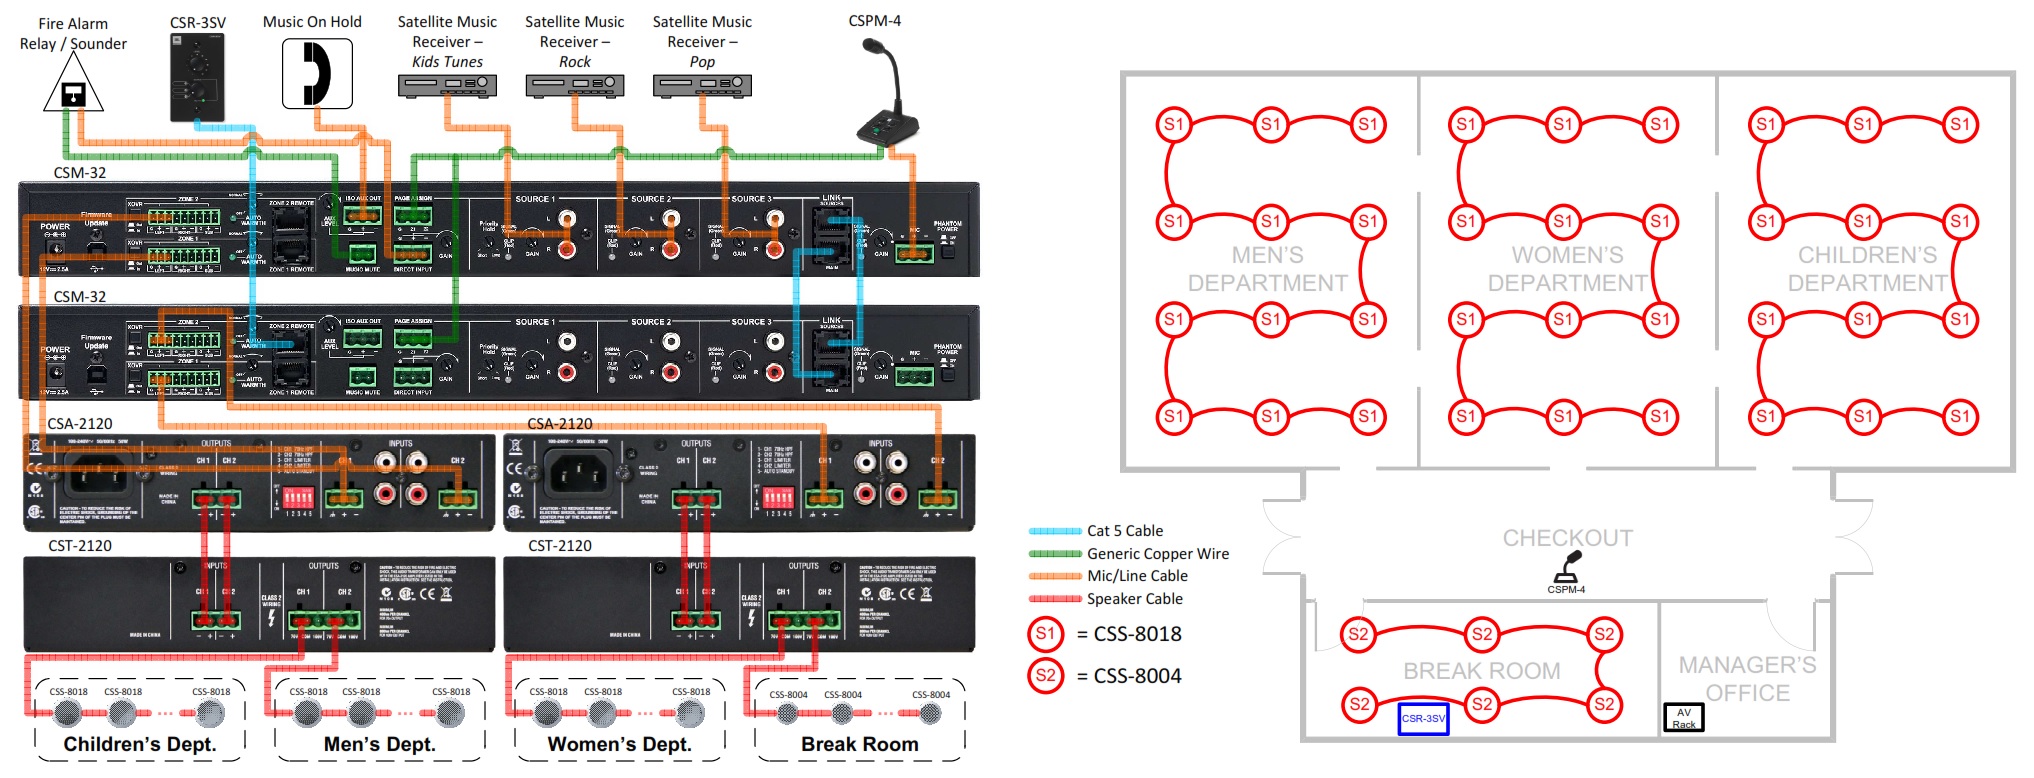 Схема организации аудиосистемы на базе JBL CSM-32  в супермаркете